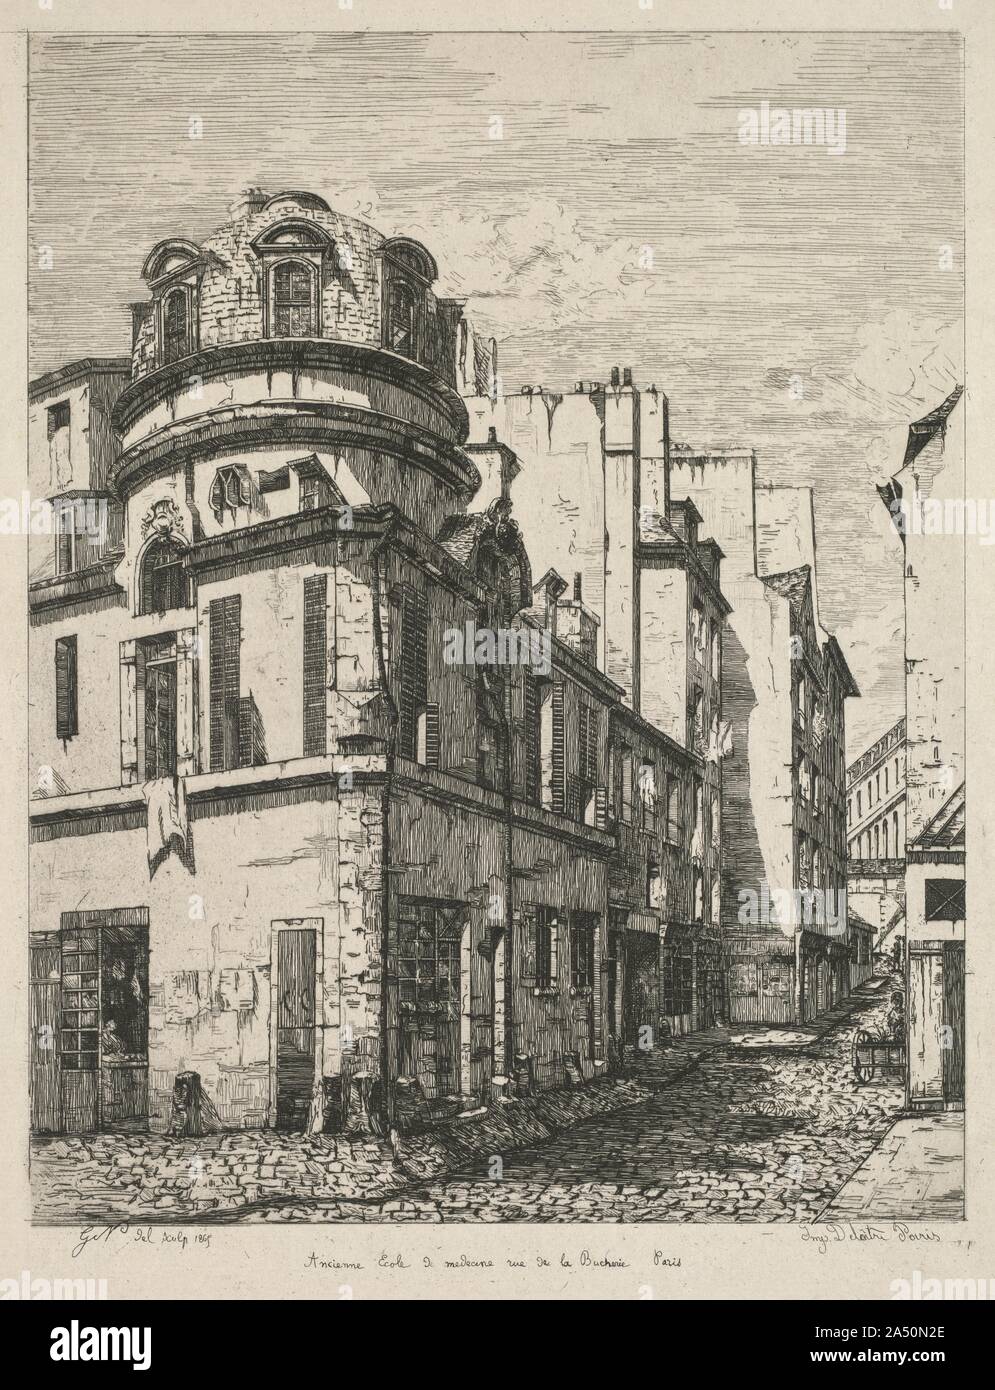 Eaux-Fortes sur le Vieux Paris: Ancienne &#xe9;cole de m&#xe9;decine rue de la B&#xfb;cherie (Etchings of Old Paris: Former Medical School, rue de la Bucherie), 1865. Stock Photo